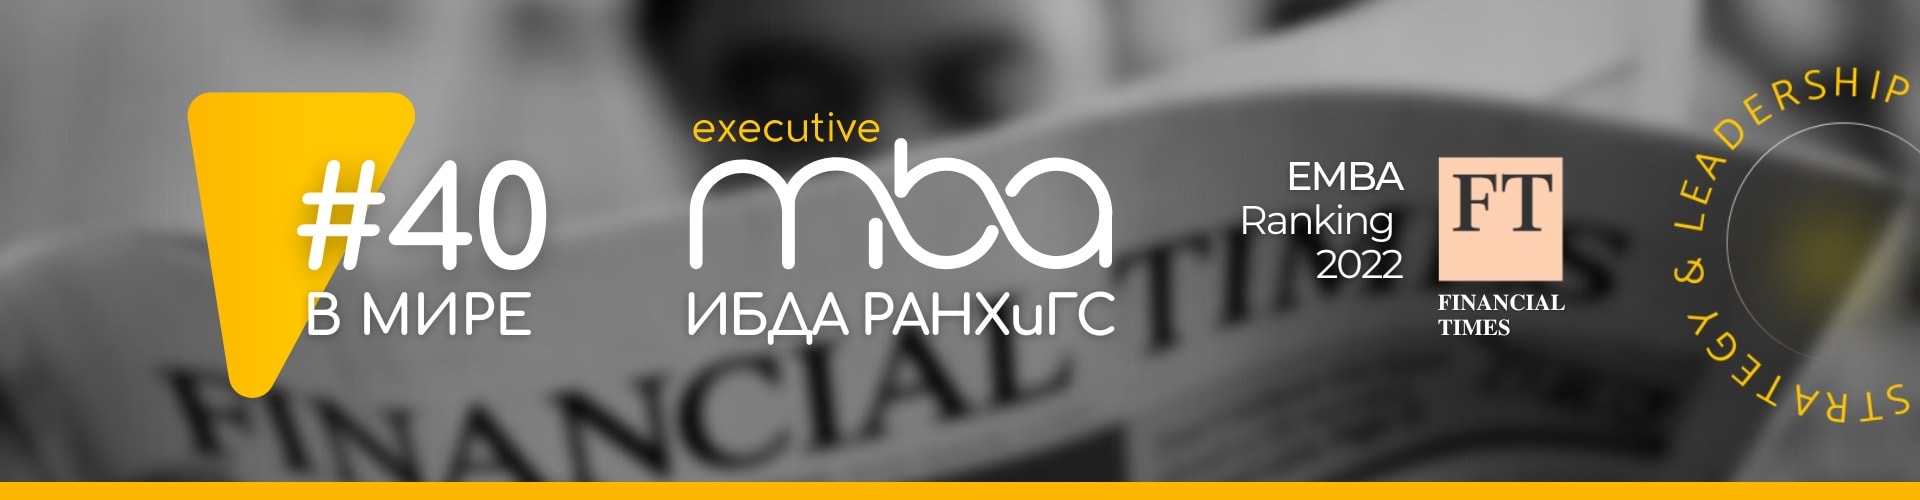 Executive MBA ИБДА РАНХиГС – №40 в мире и №1 в России рейтинге Financial Times 2022